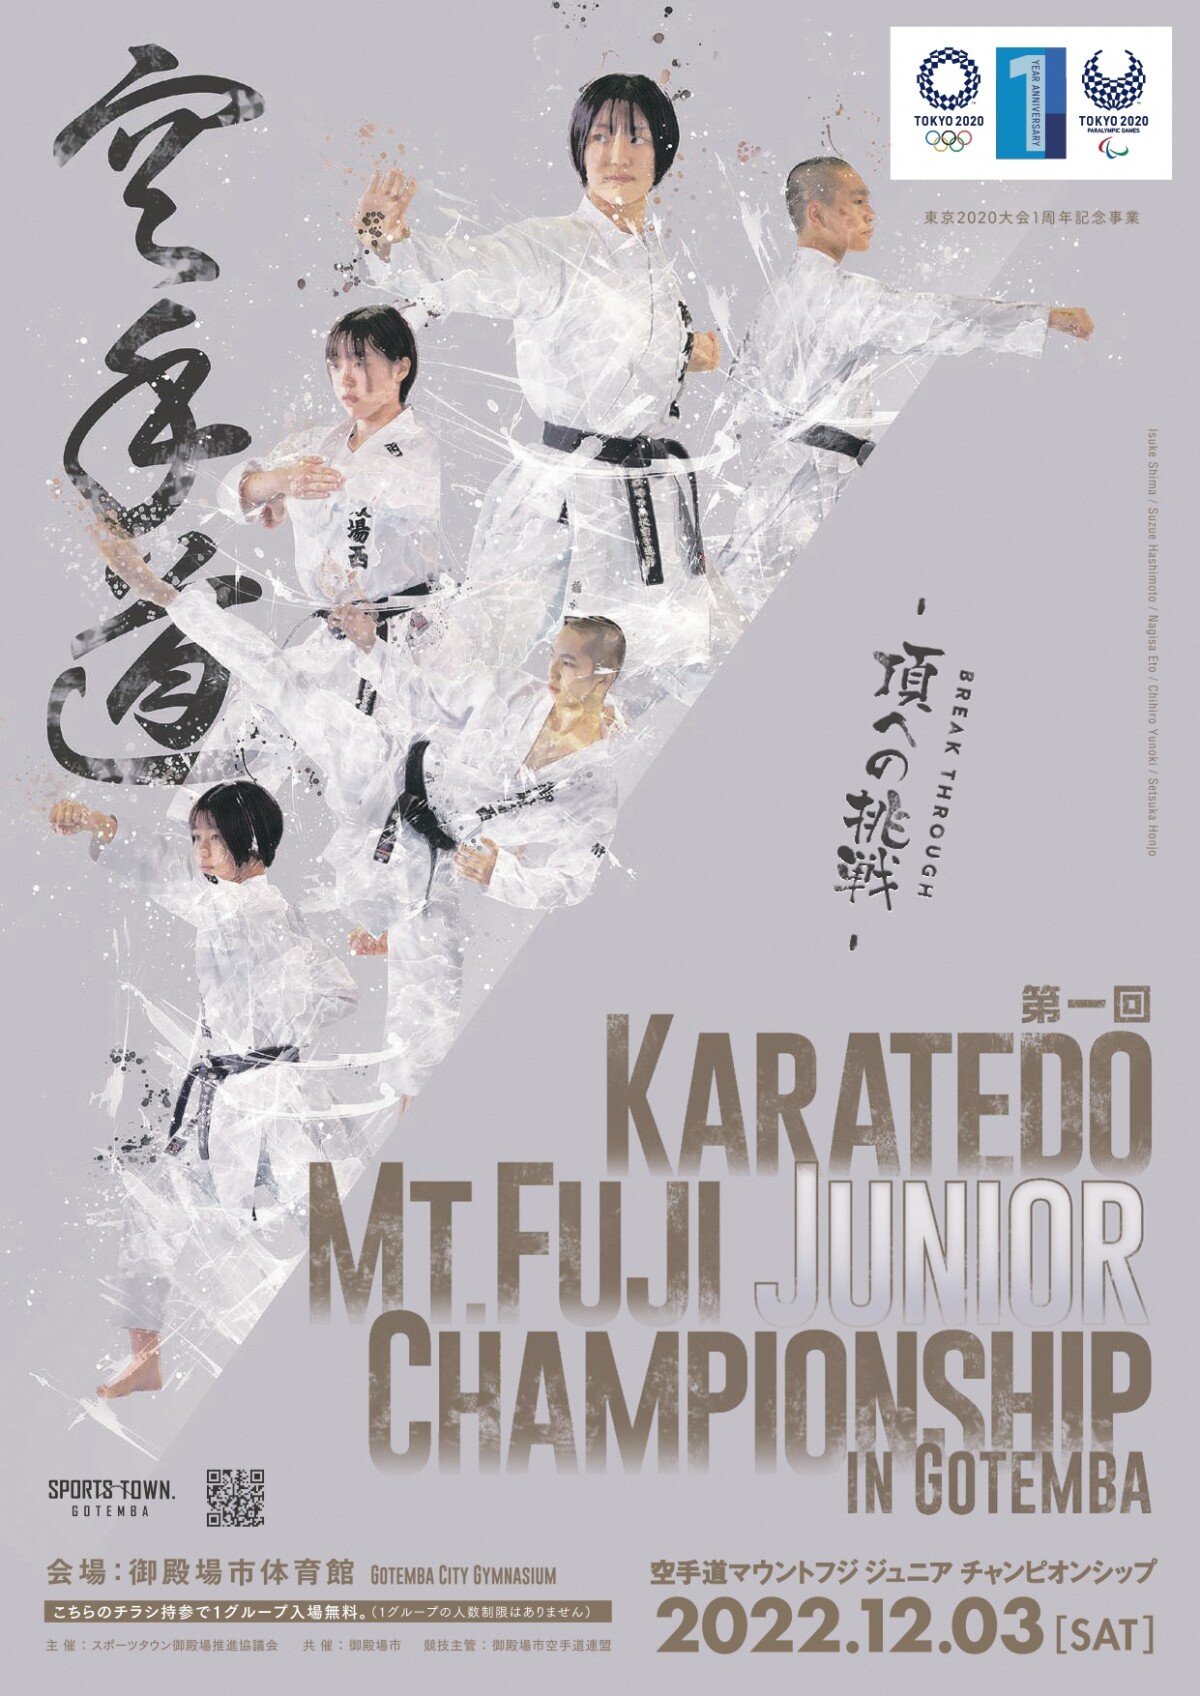 第1回空手道 Karatedo Mt.Fuji Junior Championship in Gotemba開催!